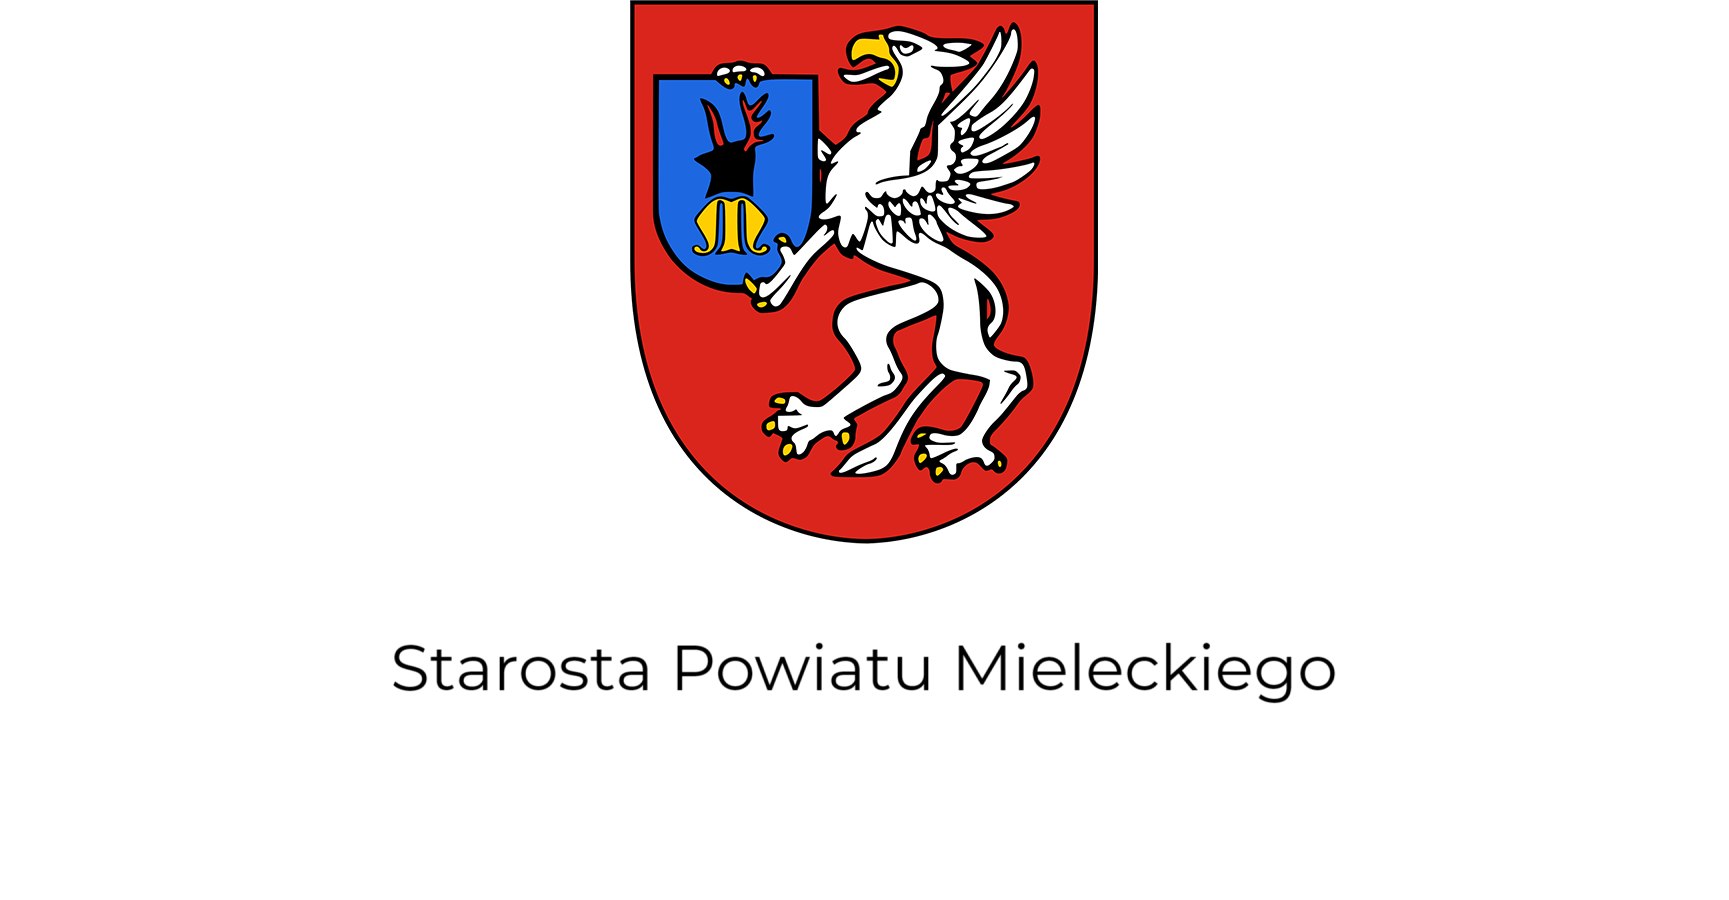 Starosta Powiatu Mieleckiego